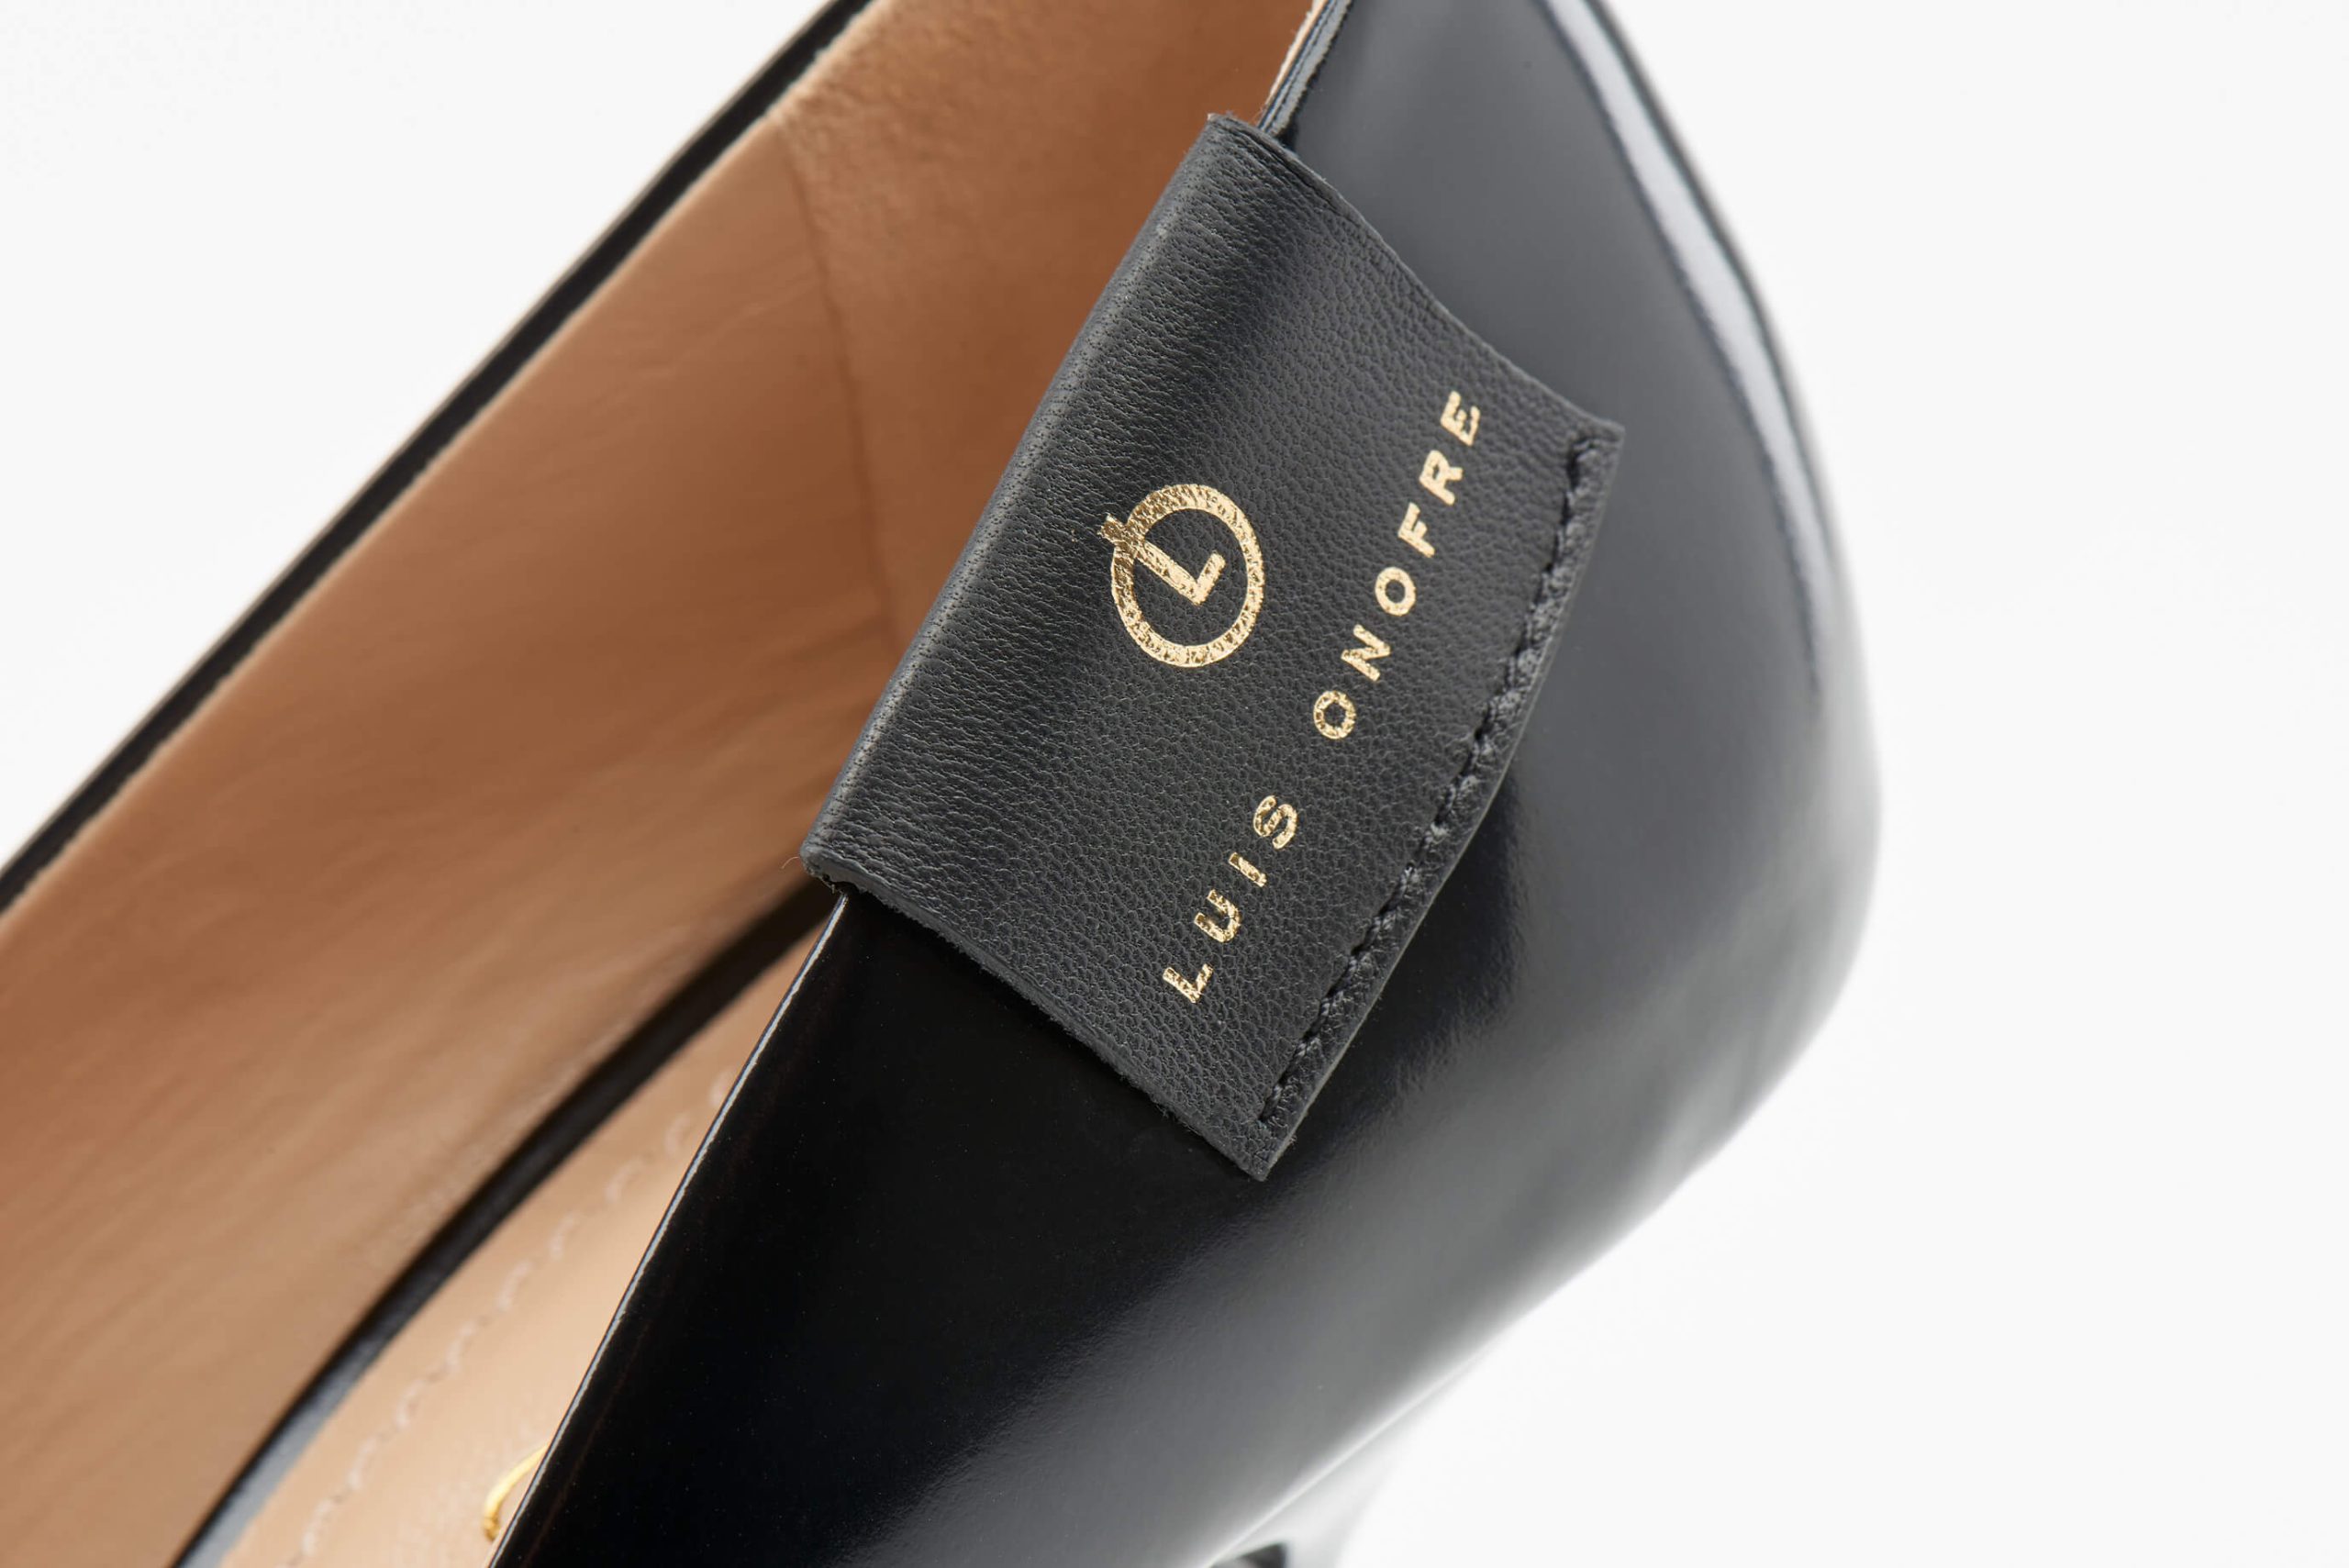 Luis Onofre Portuguese Shoes FW22 – 5273_01 – Prometheus-7